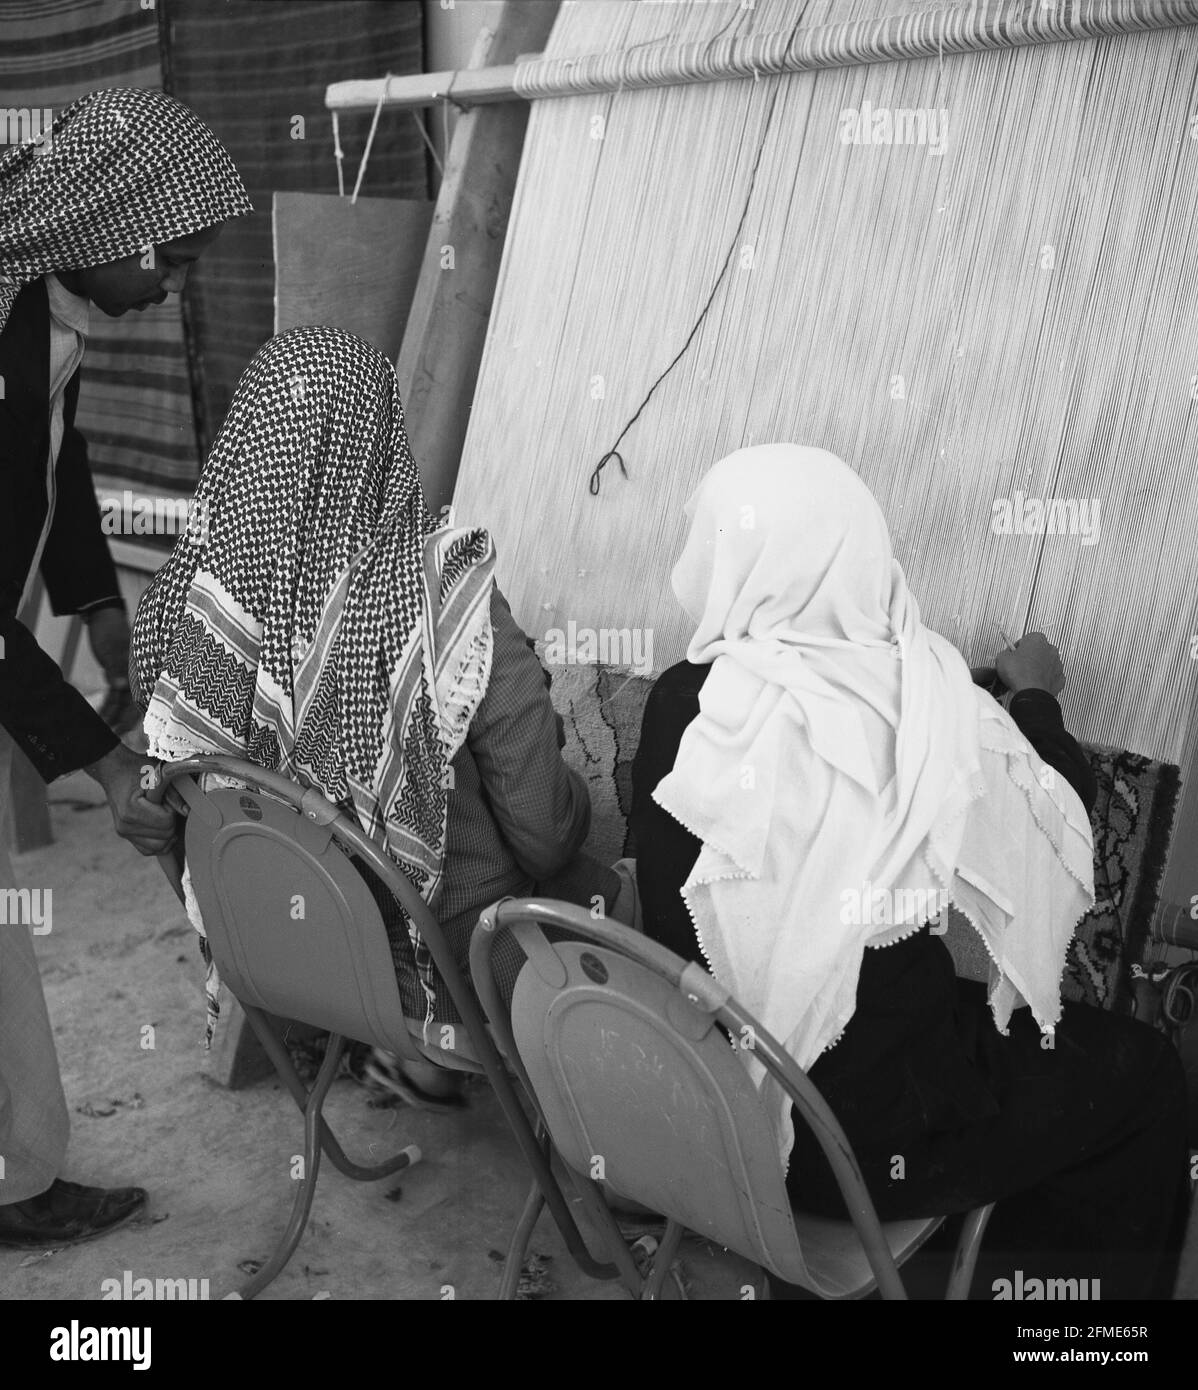 Dans les années 1960, deux hommes arabes bédouins en robe et en coiffures traditionnelles, l'un portant un motif semblable à celui d'une nappe, l'autre un tissu blanc Uni, assis à l'extérieur faisant du tissage traditionnel, faisant un tapis sur un métier à la main, Jeddah, Arabie Saoudite. La découverte du pétrole et l'industrialisation du pays ont vu les métiers traditionnels tels que le tissage diminuer. Banque D'Images